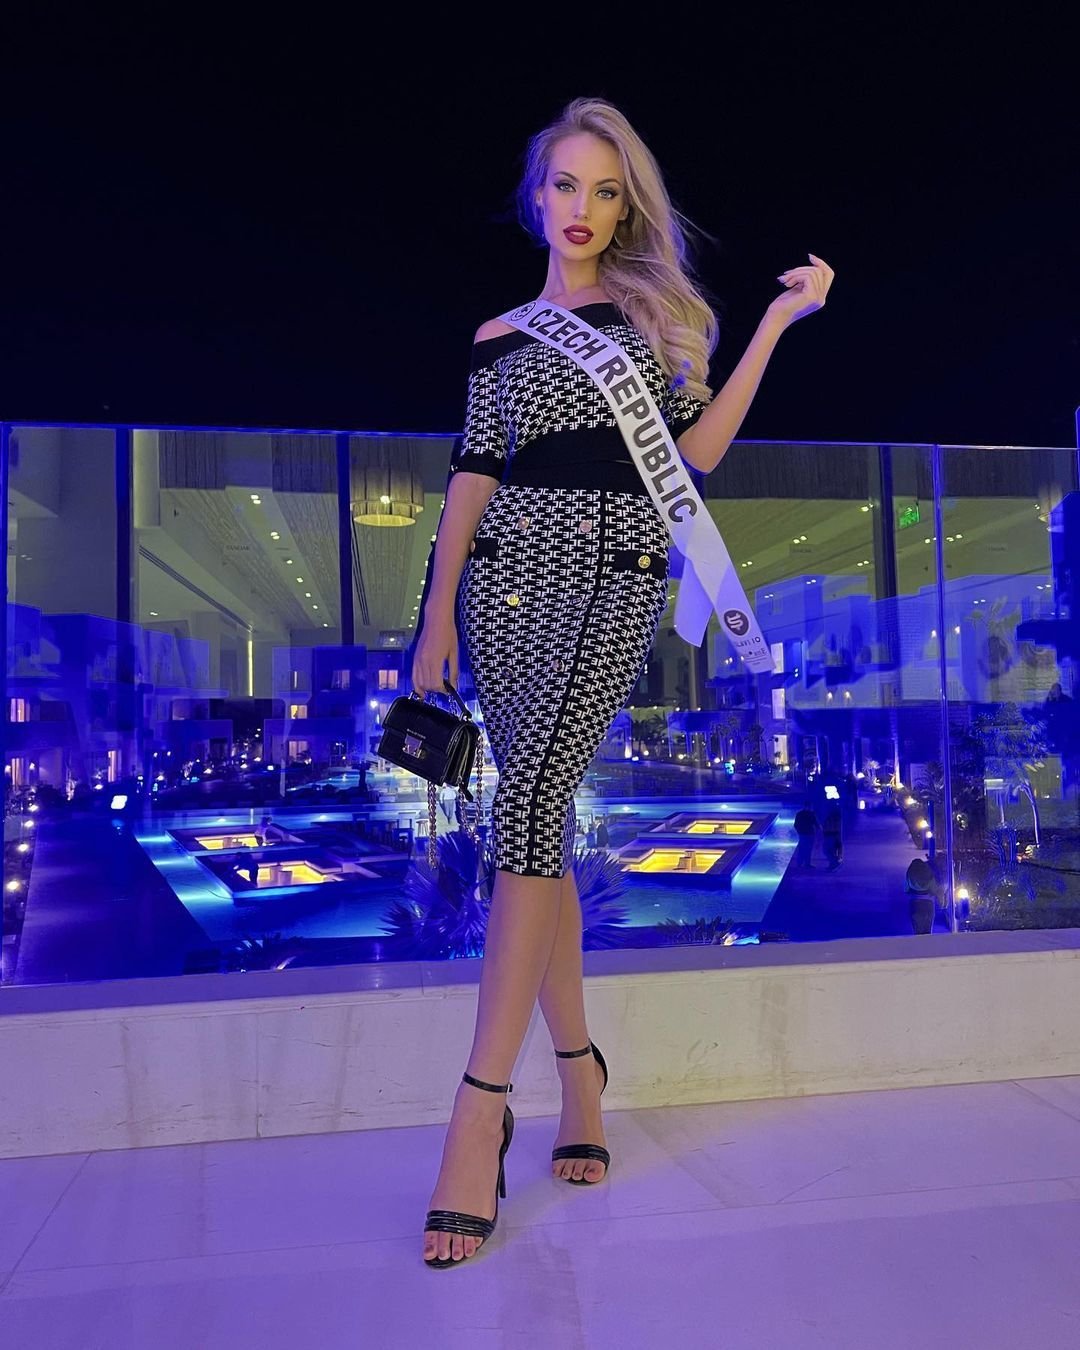 Miss Natálie Kočendová vyhrála mezinárodní soutěž krásy, která se konala v Egyptě.